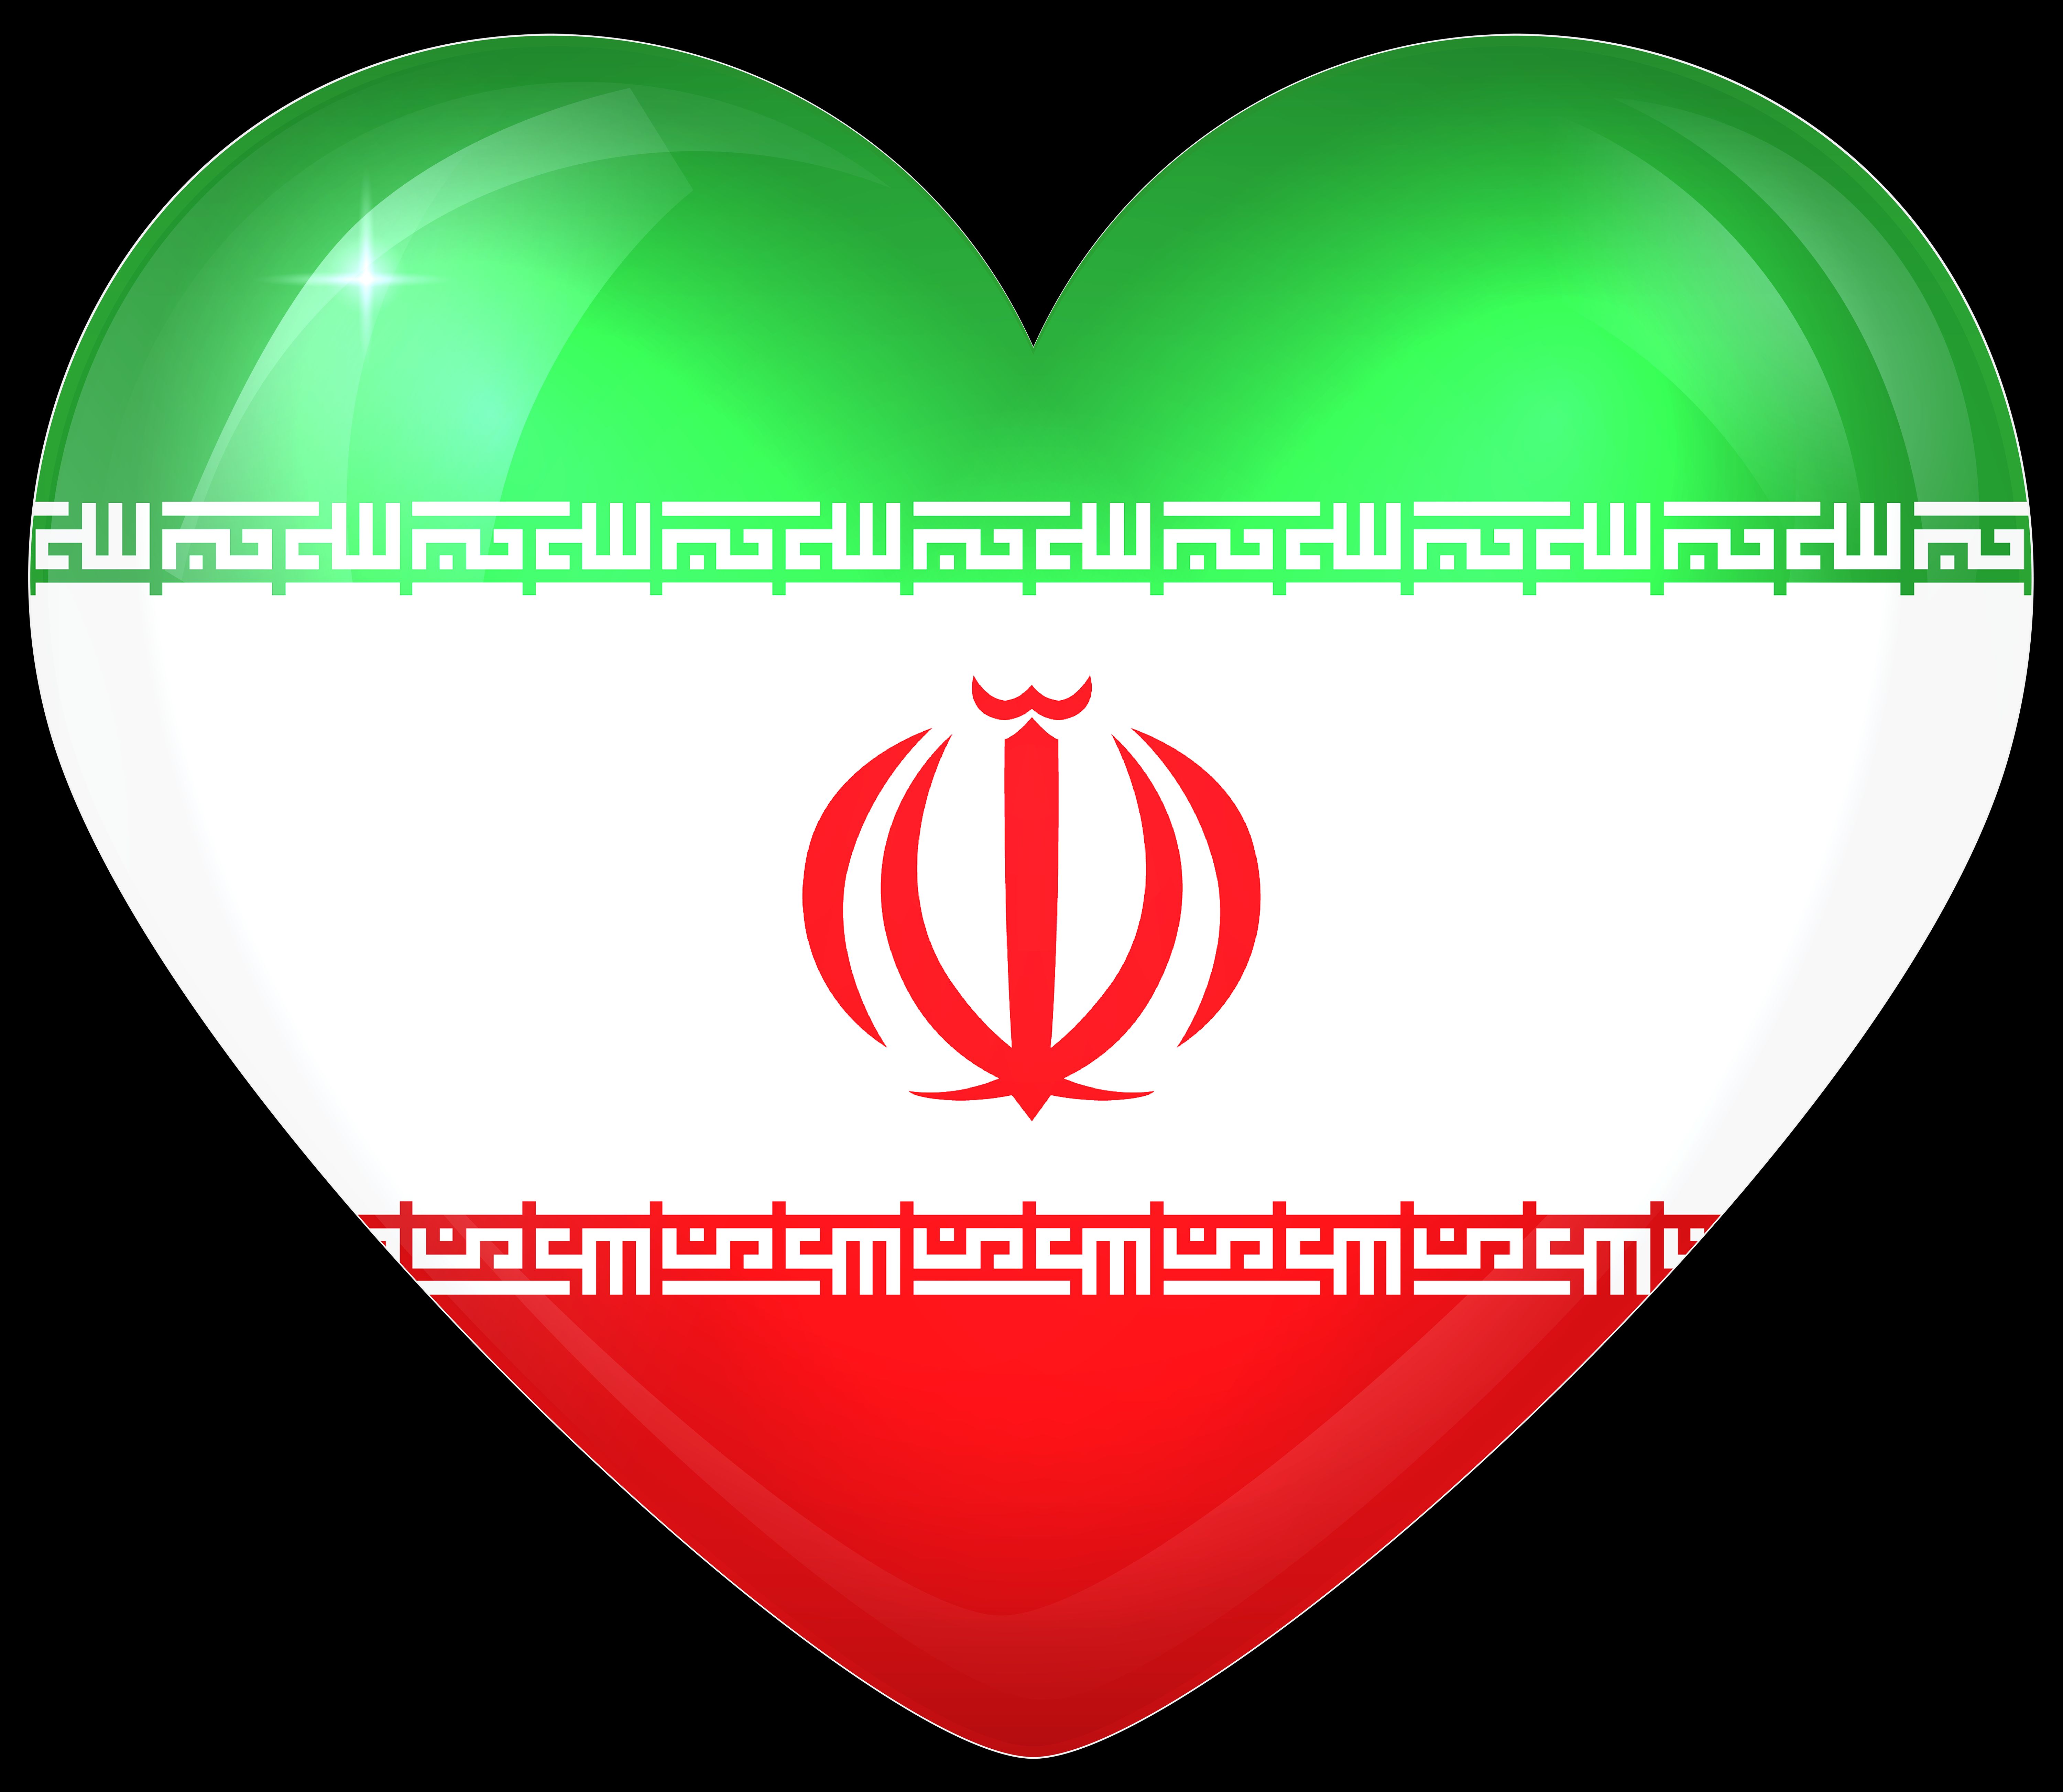 467102 Обои и Иранский Флаг картинки на рабочий стол. Скачать  заставки на ПК бесплатно